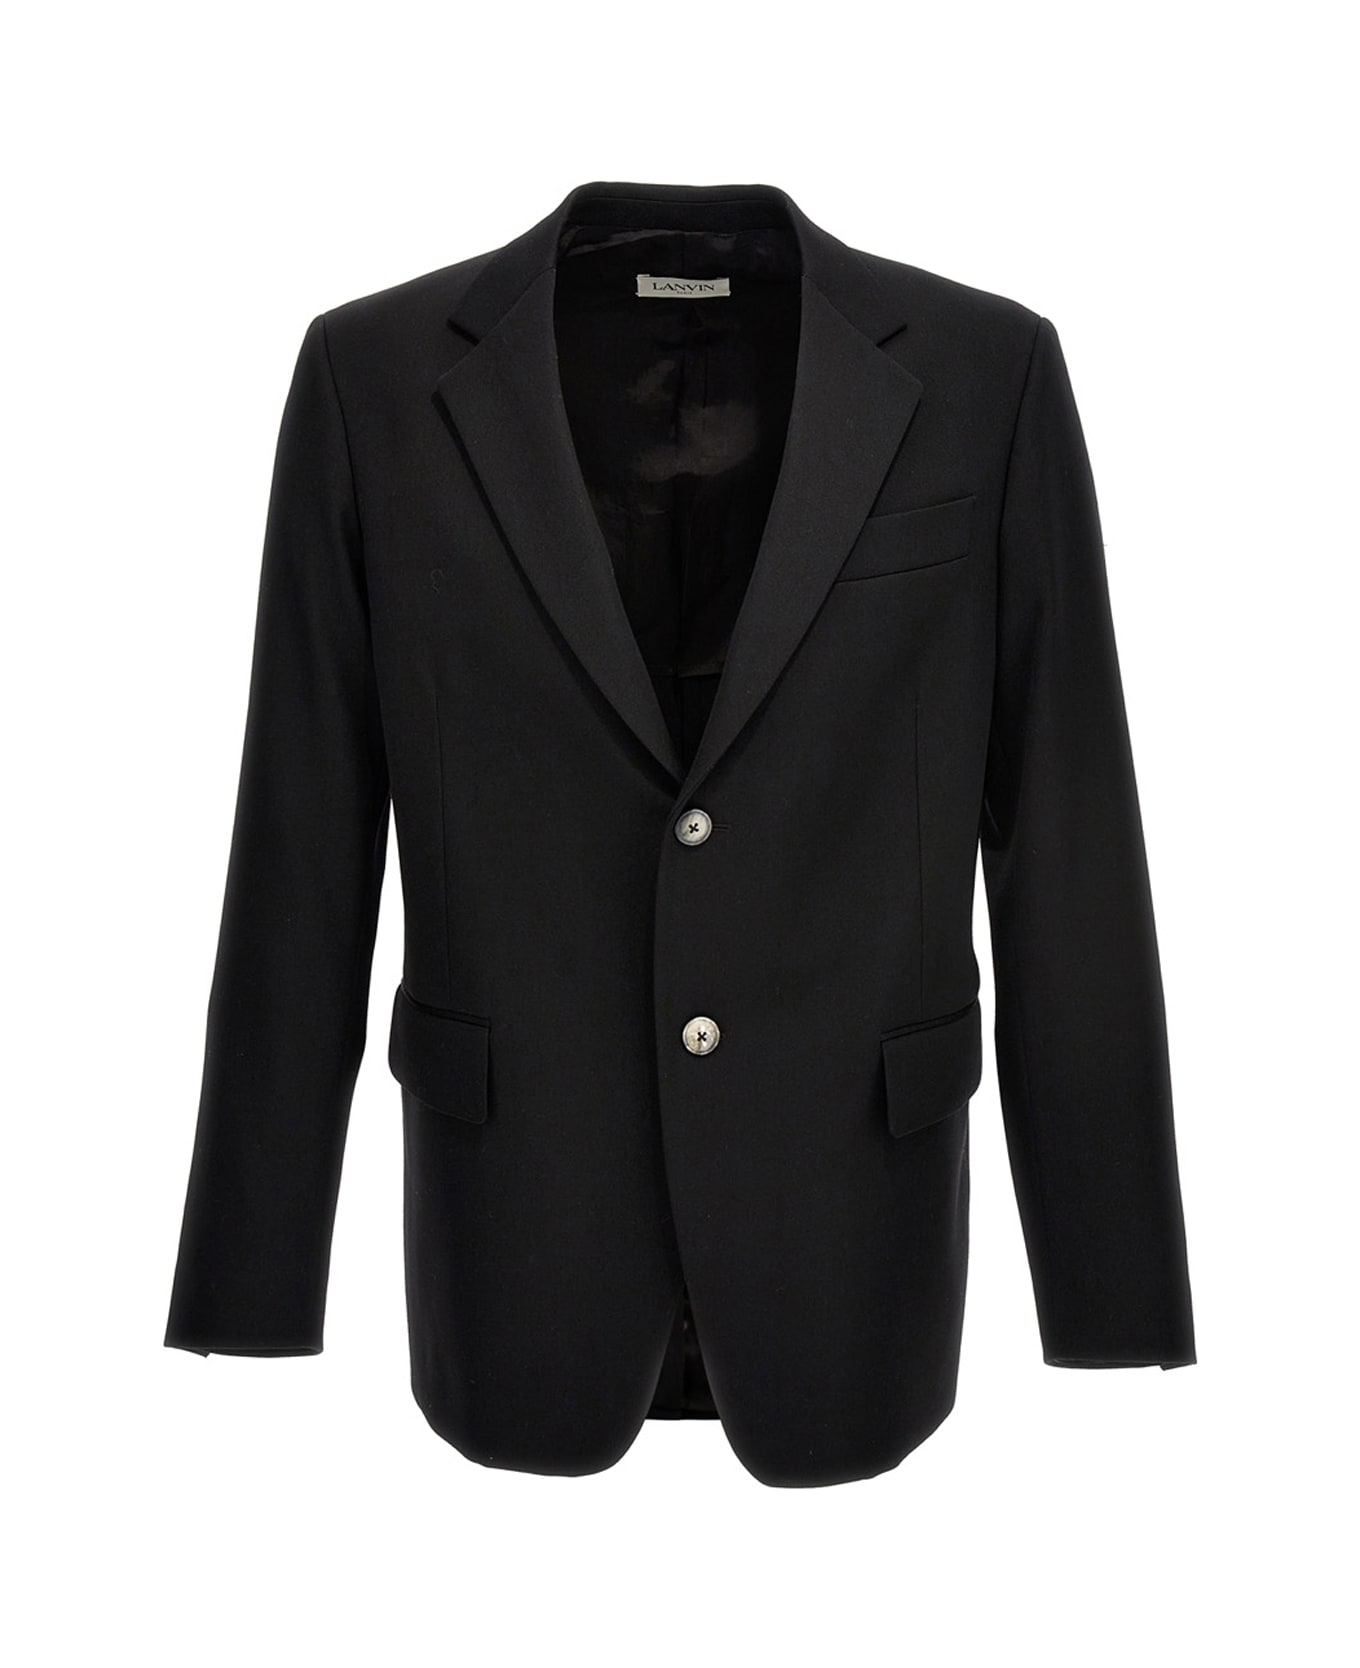 Lanvin Wool Single Breast Blazer Jacket - Black  